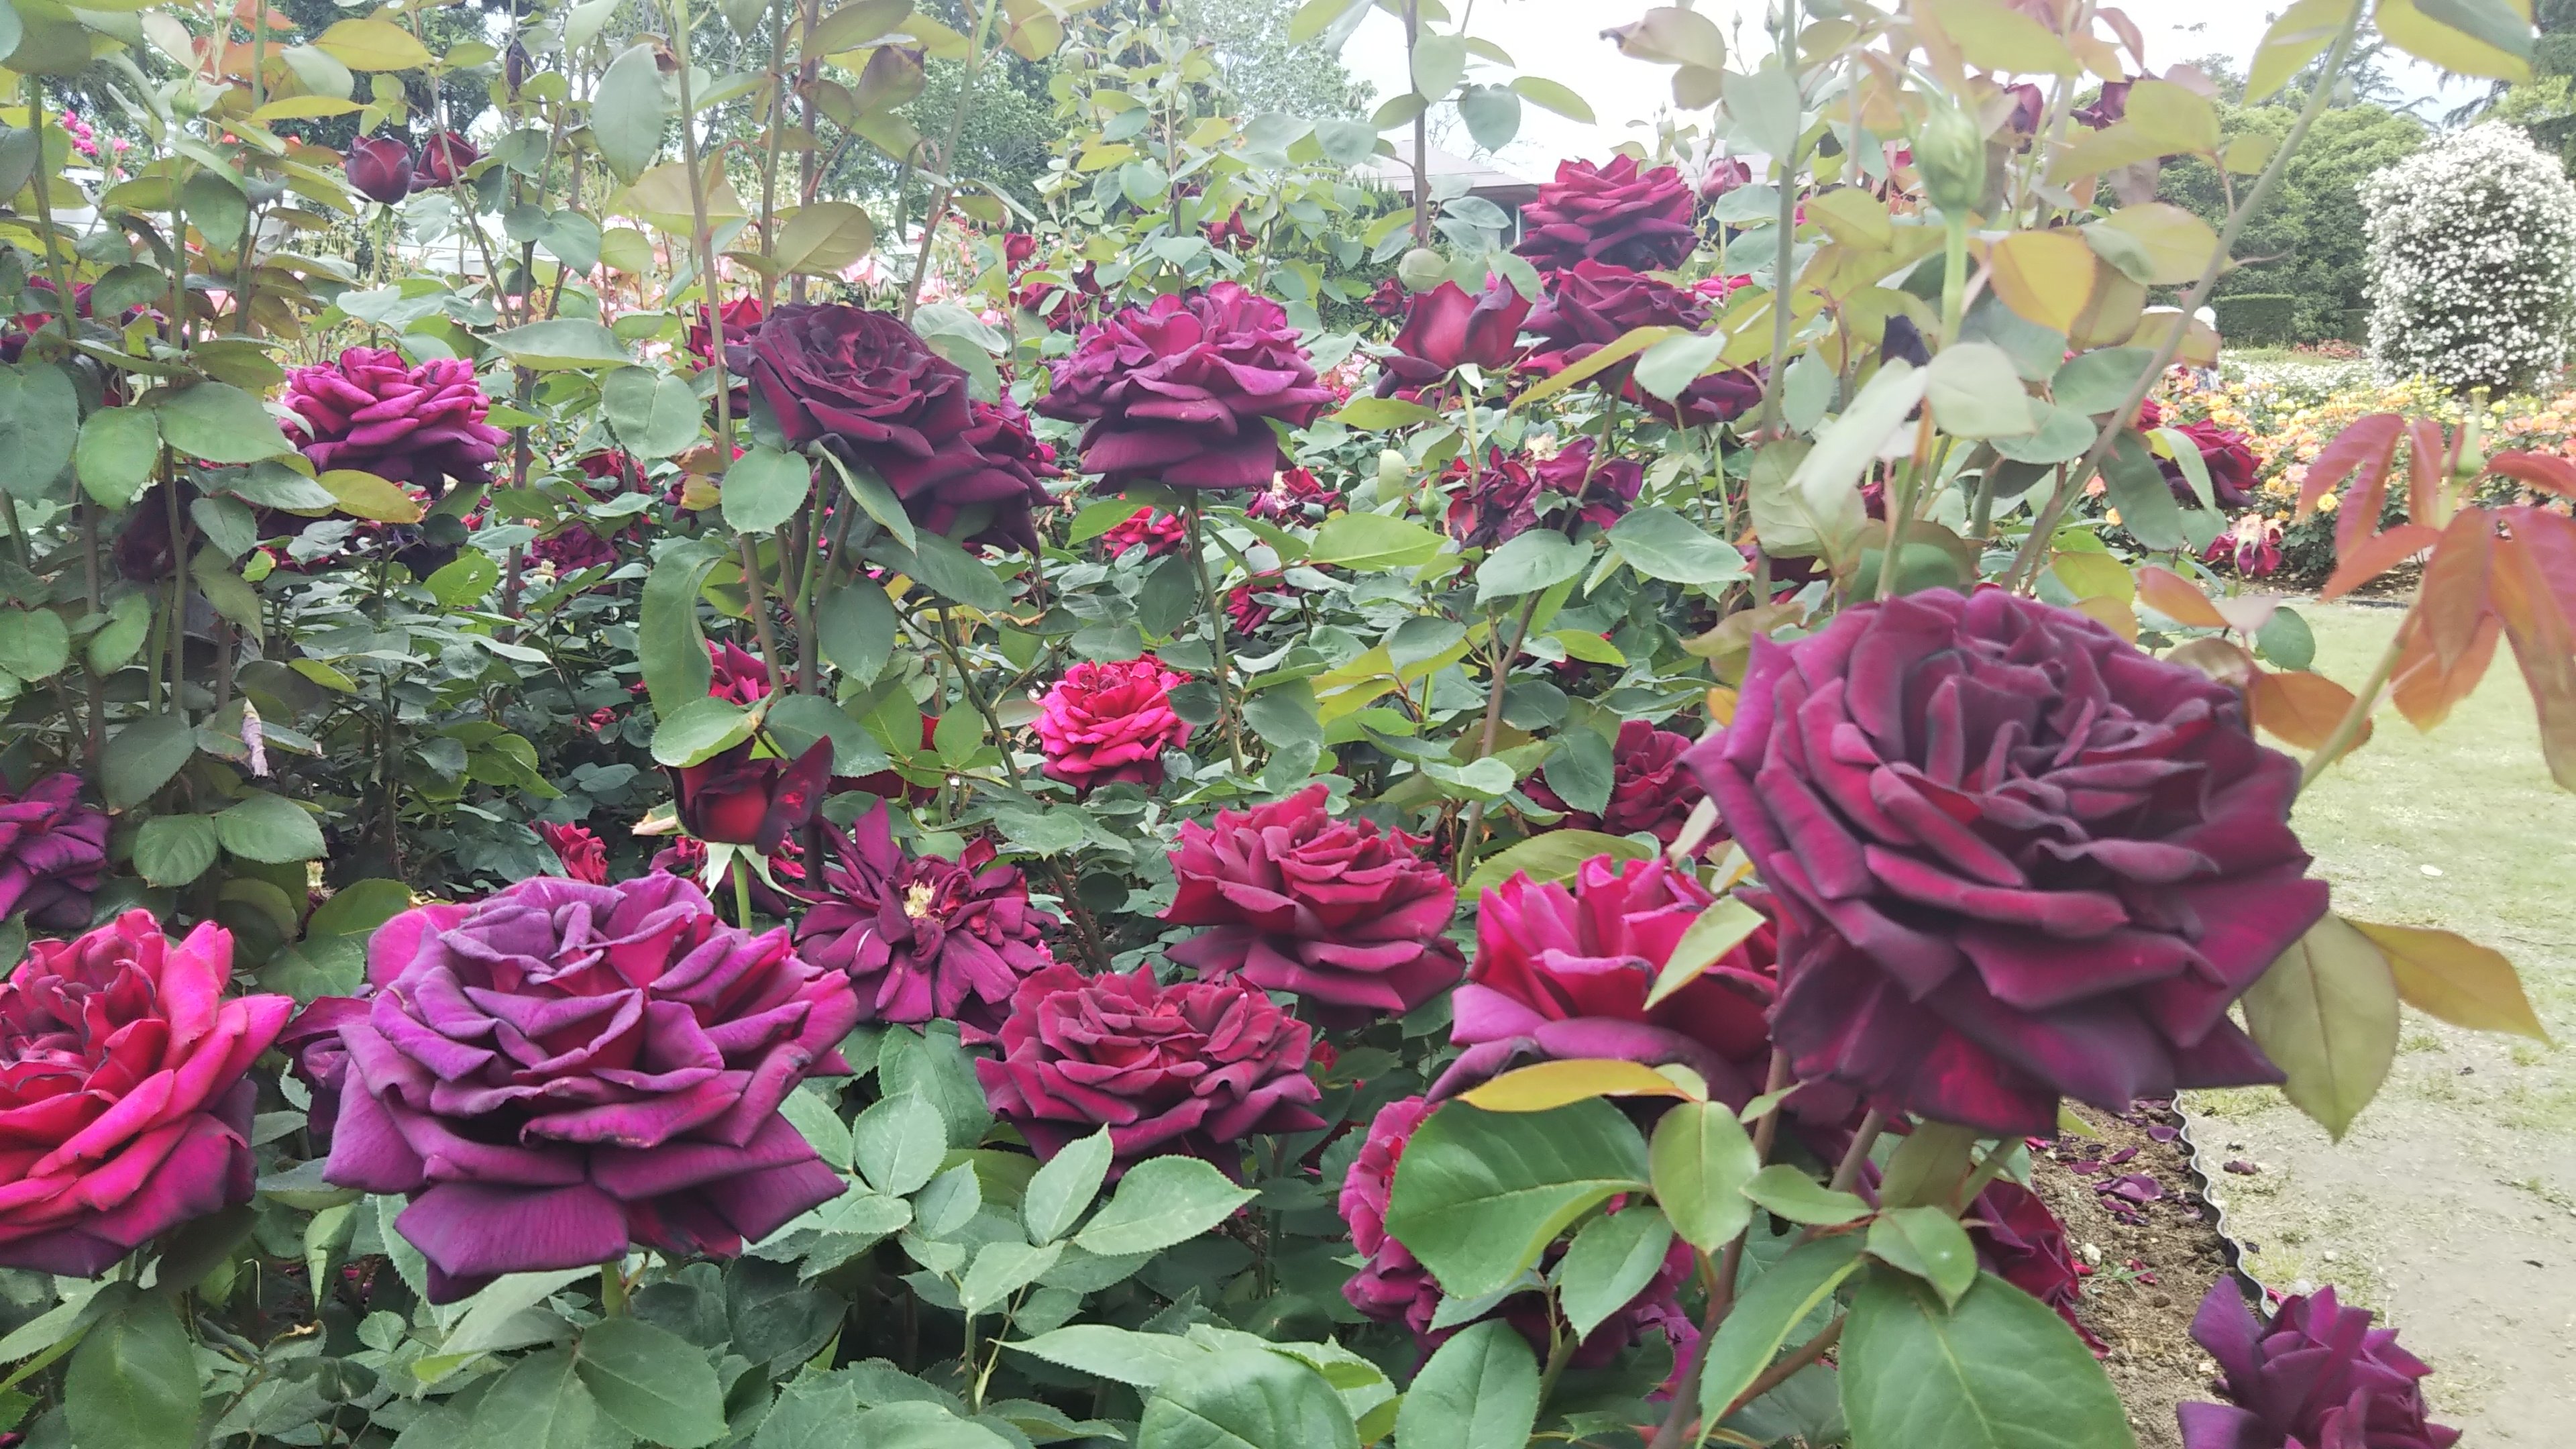 『黒バラ』と呼ばれる濃厚な紅バラ【オクラホマ】京都府立植物園 バラ園にて☺️ｲｲﾈ!